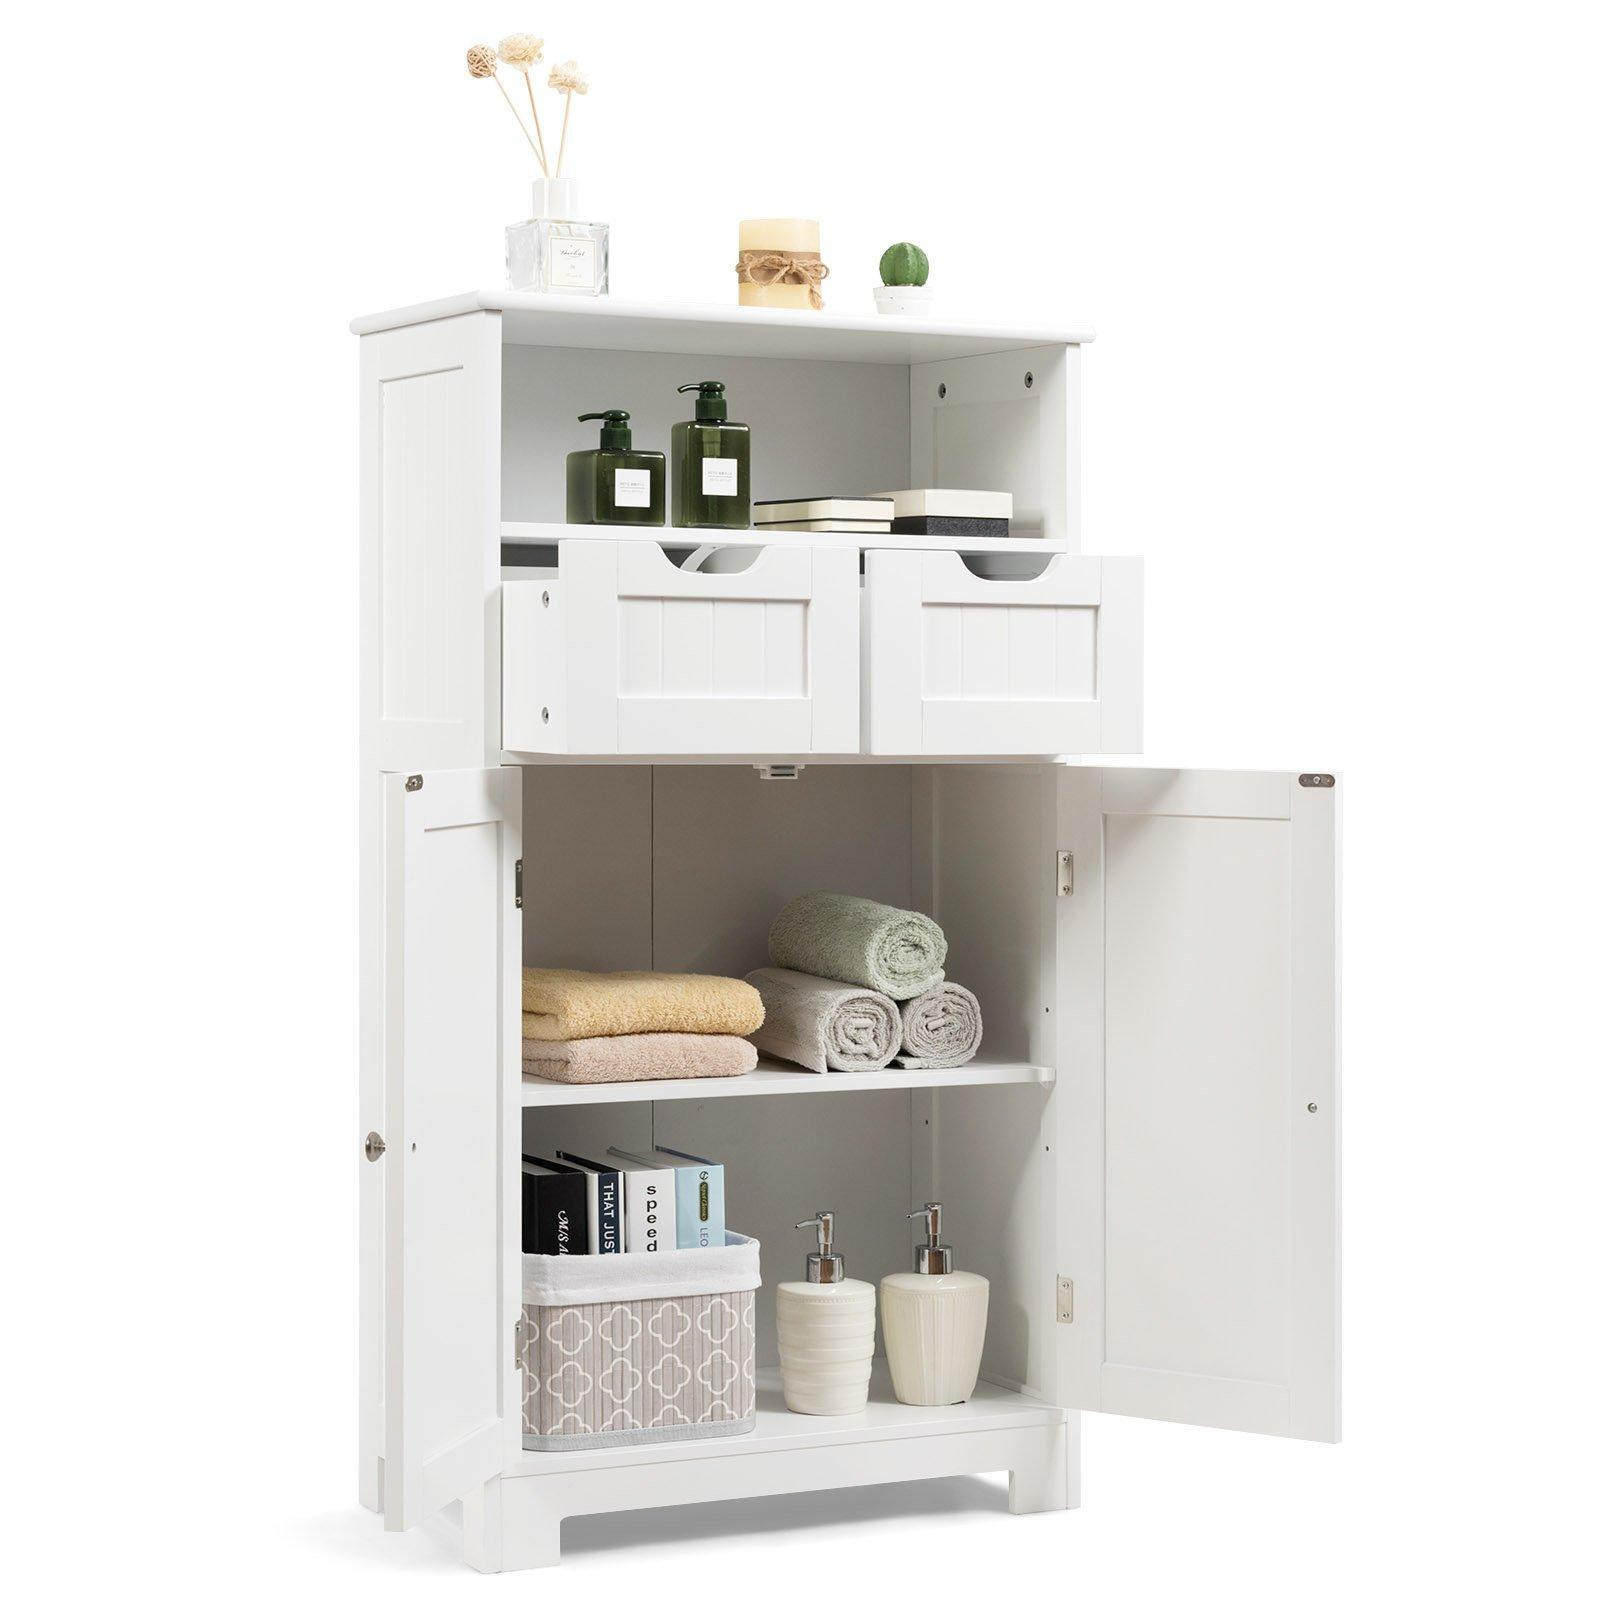 Bathroom Floor Cabinet Wooden Kitchen Storage Cupboard w/ Adjustable Shelf & Doors - image 1